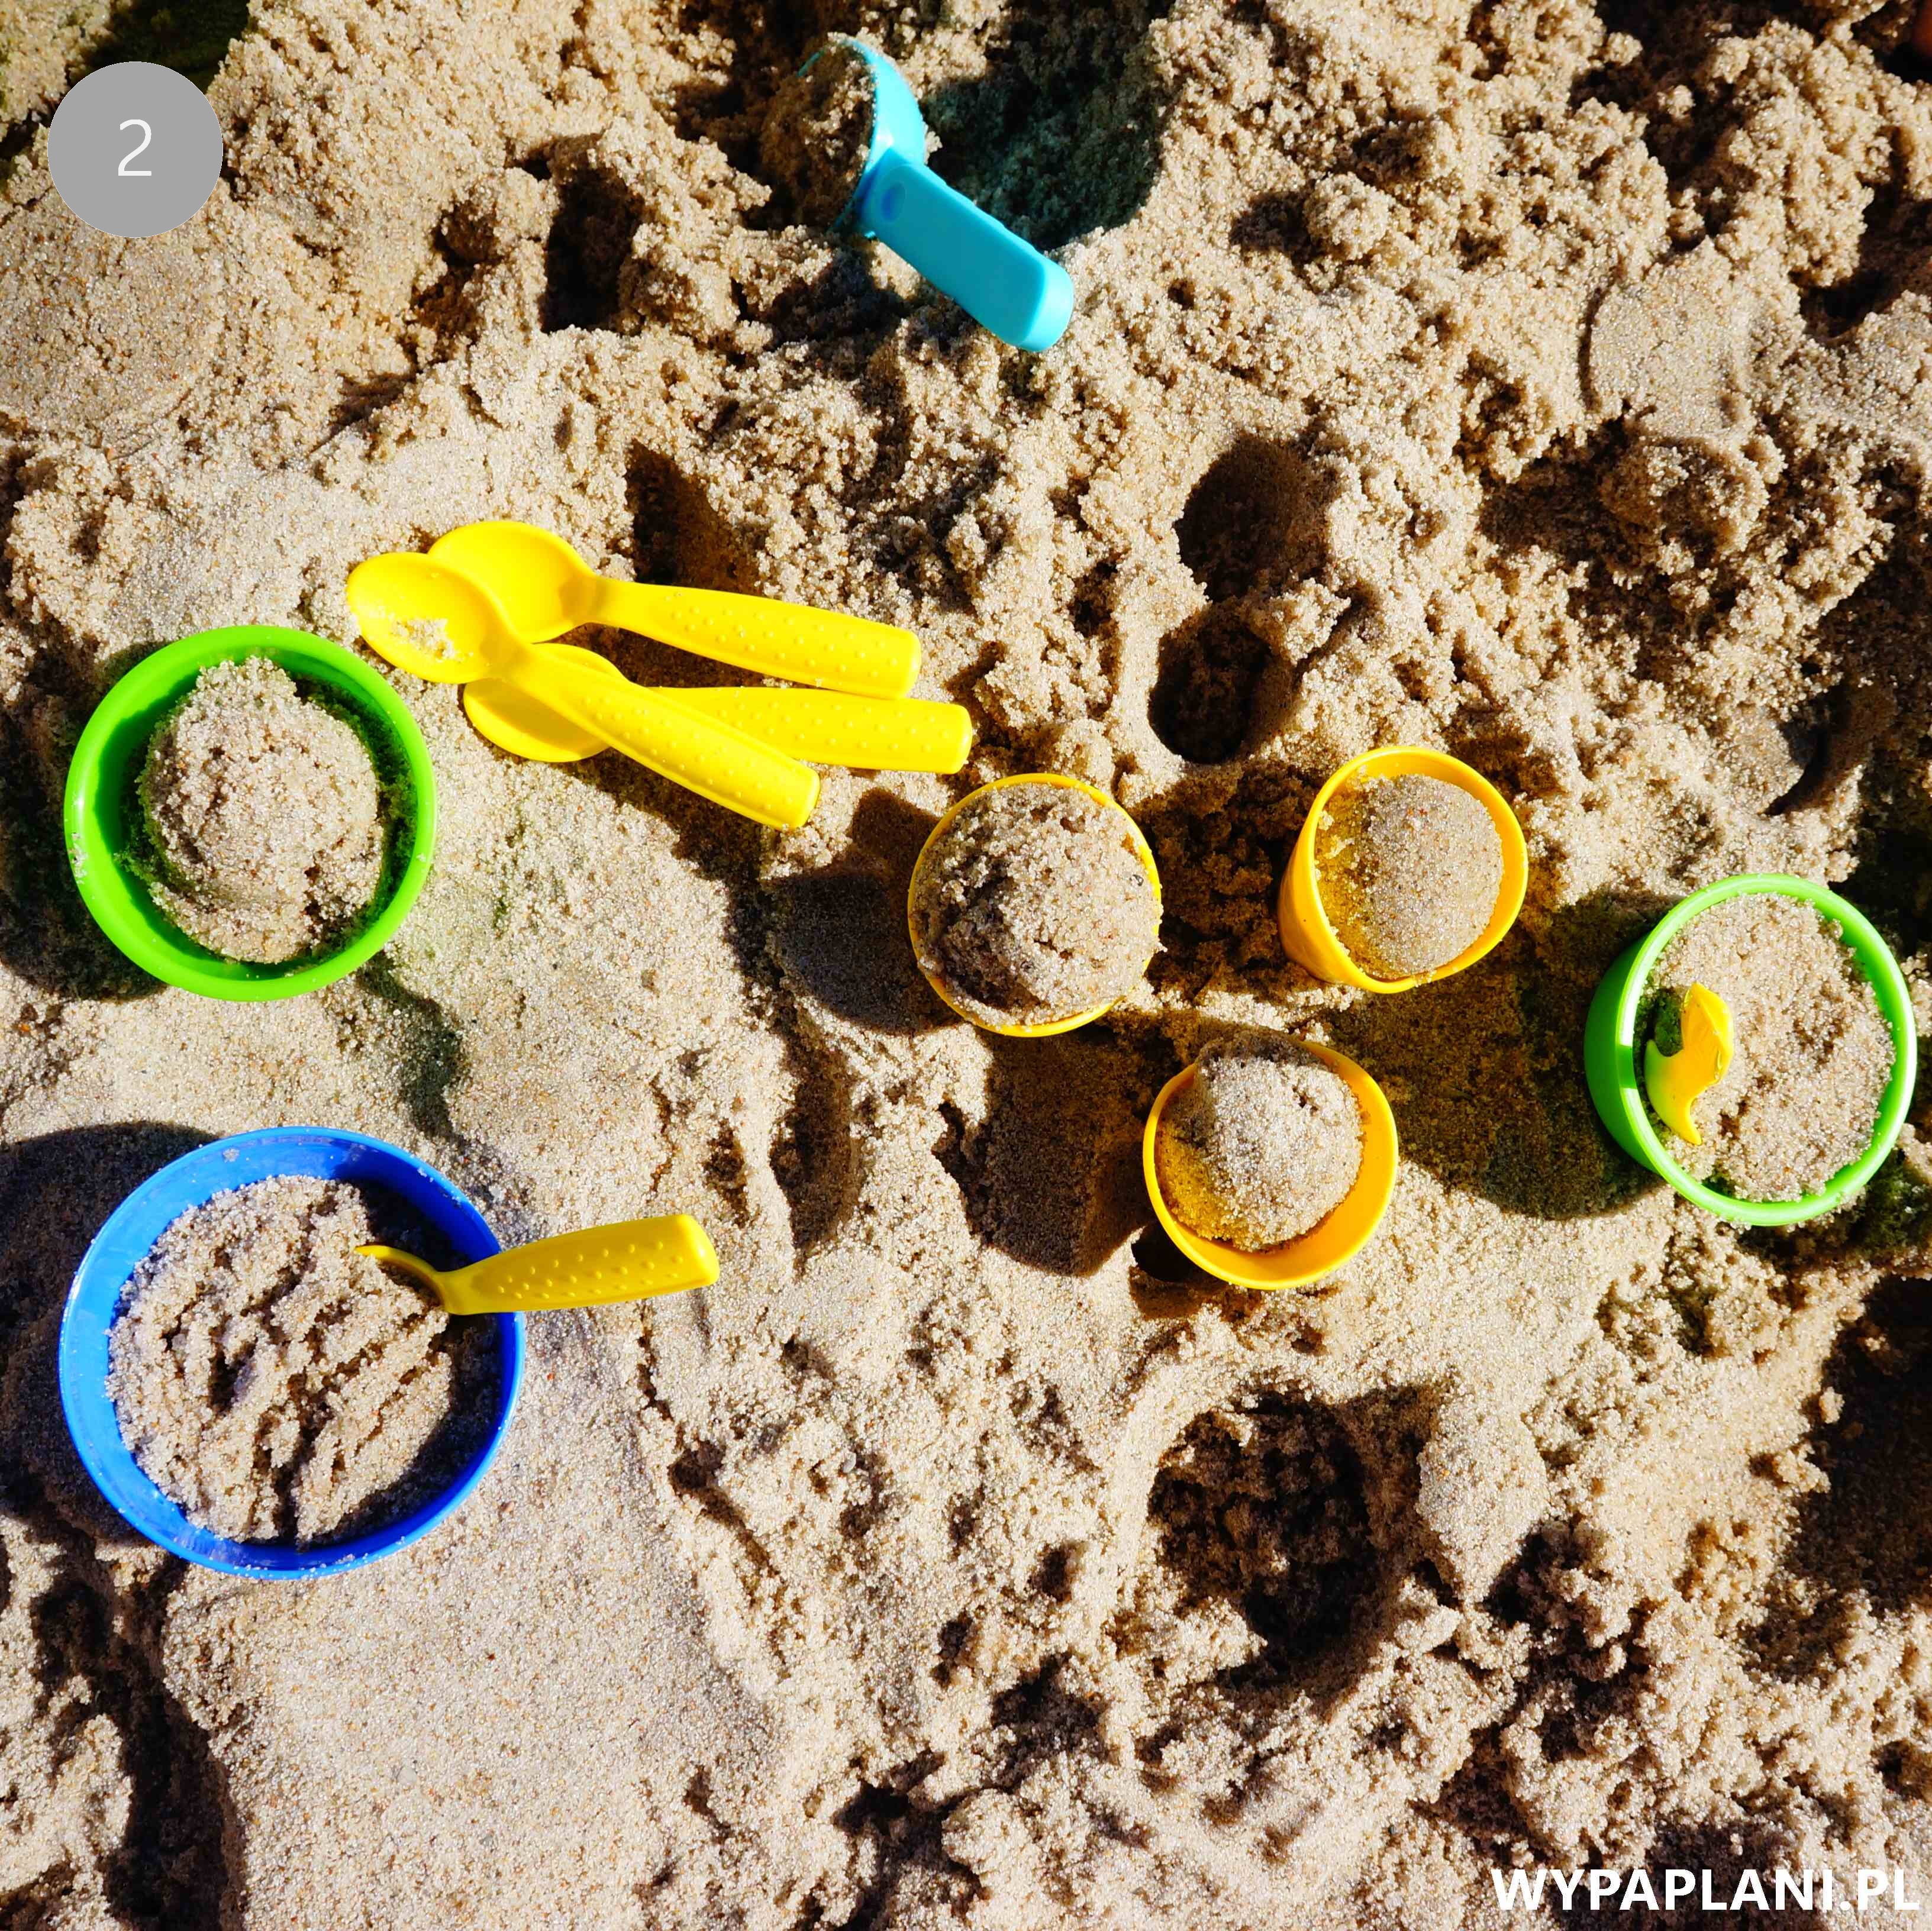 002_top zabawki do piasku piaskownicy na plażę